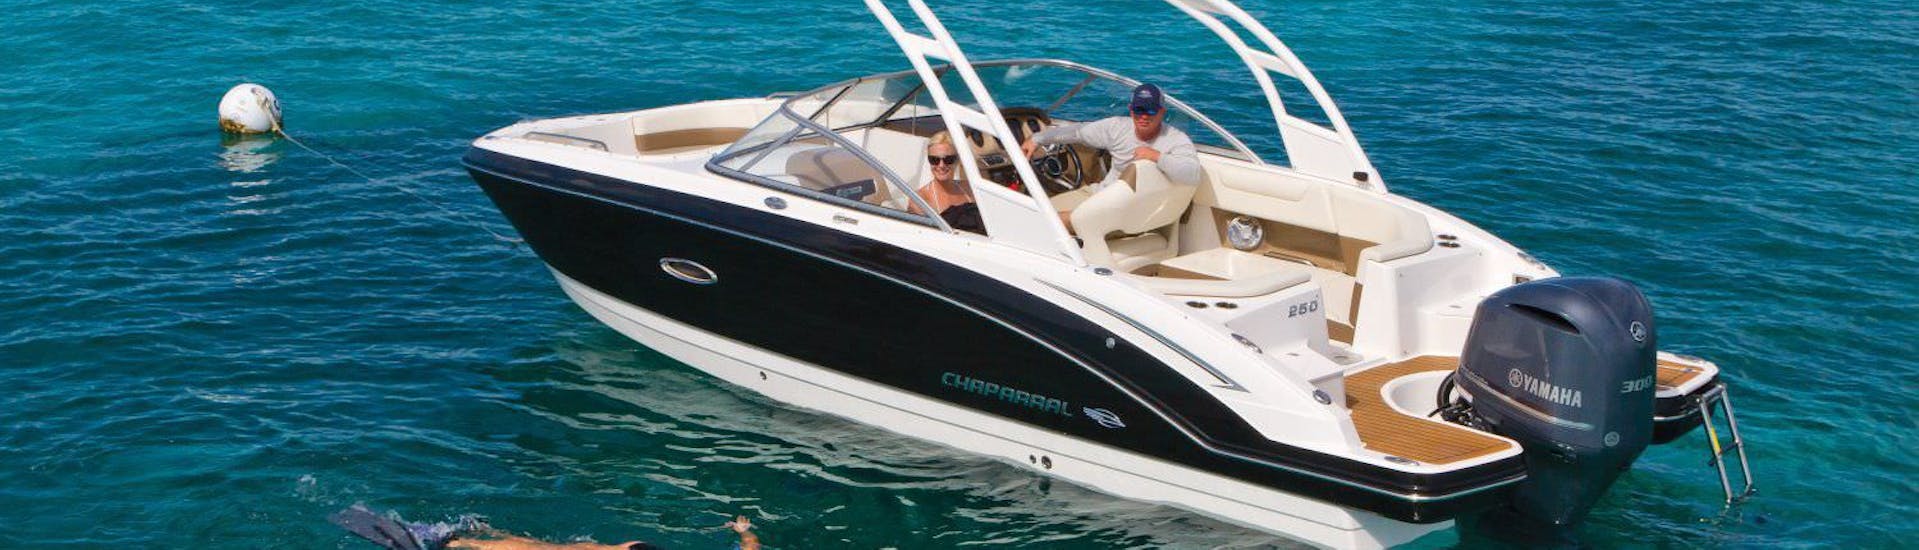 Es Vedra Charter Ibiza noleggio di una barca di lusso per un massimo di 12 persone che naviga intorno a San Antonio.